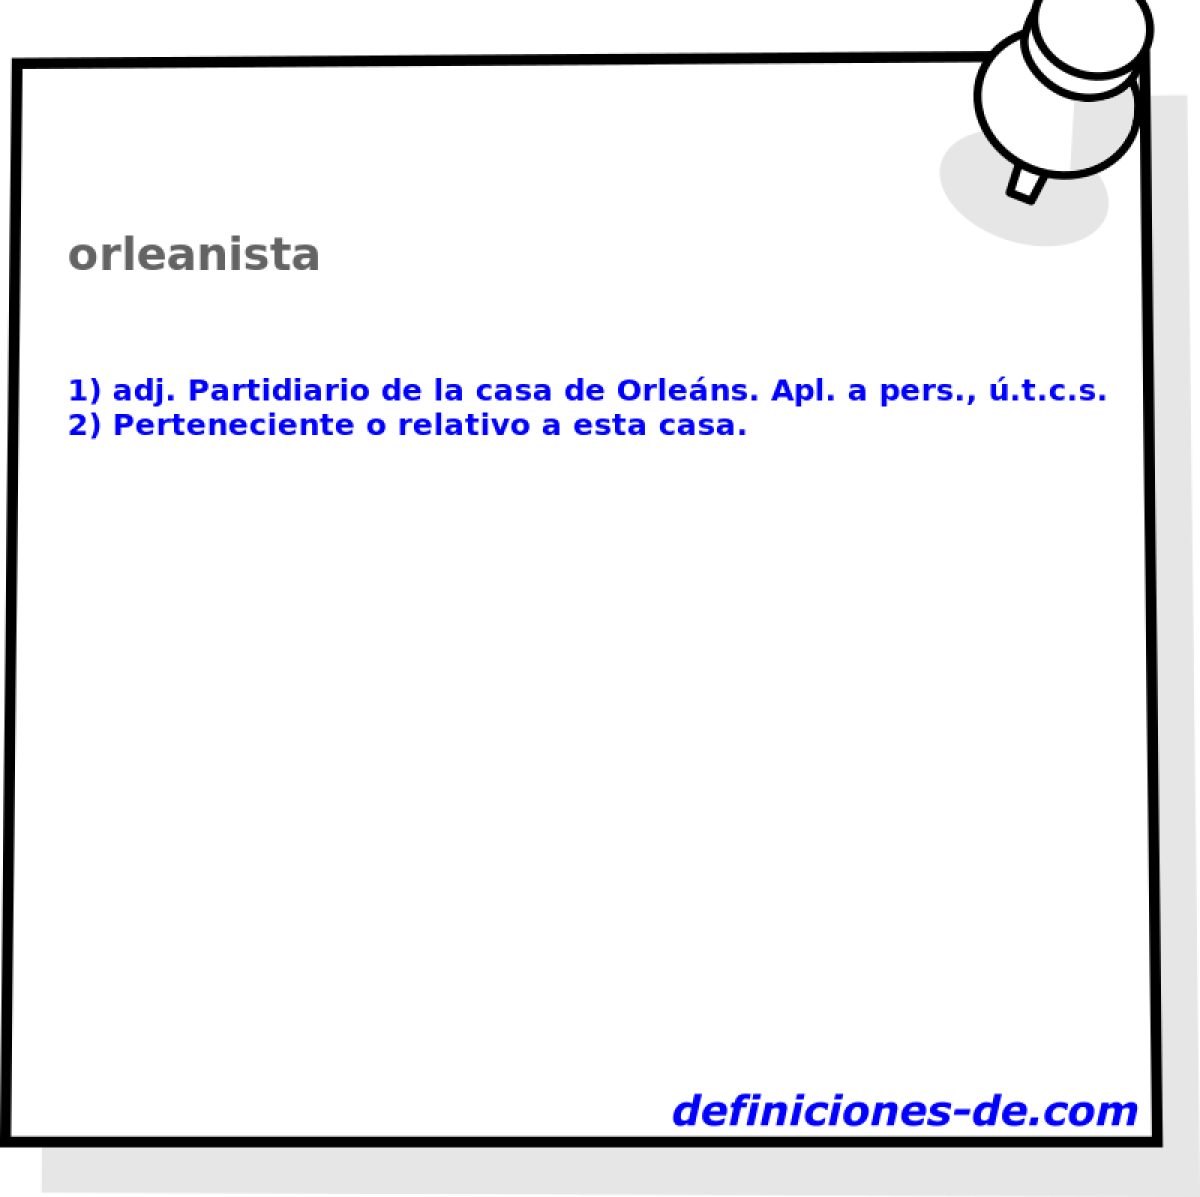 orleanista 